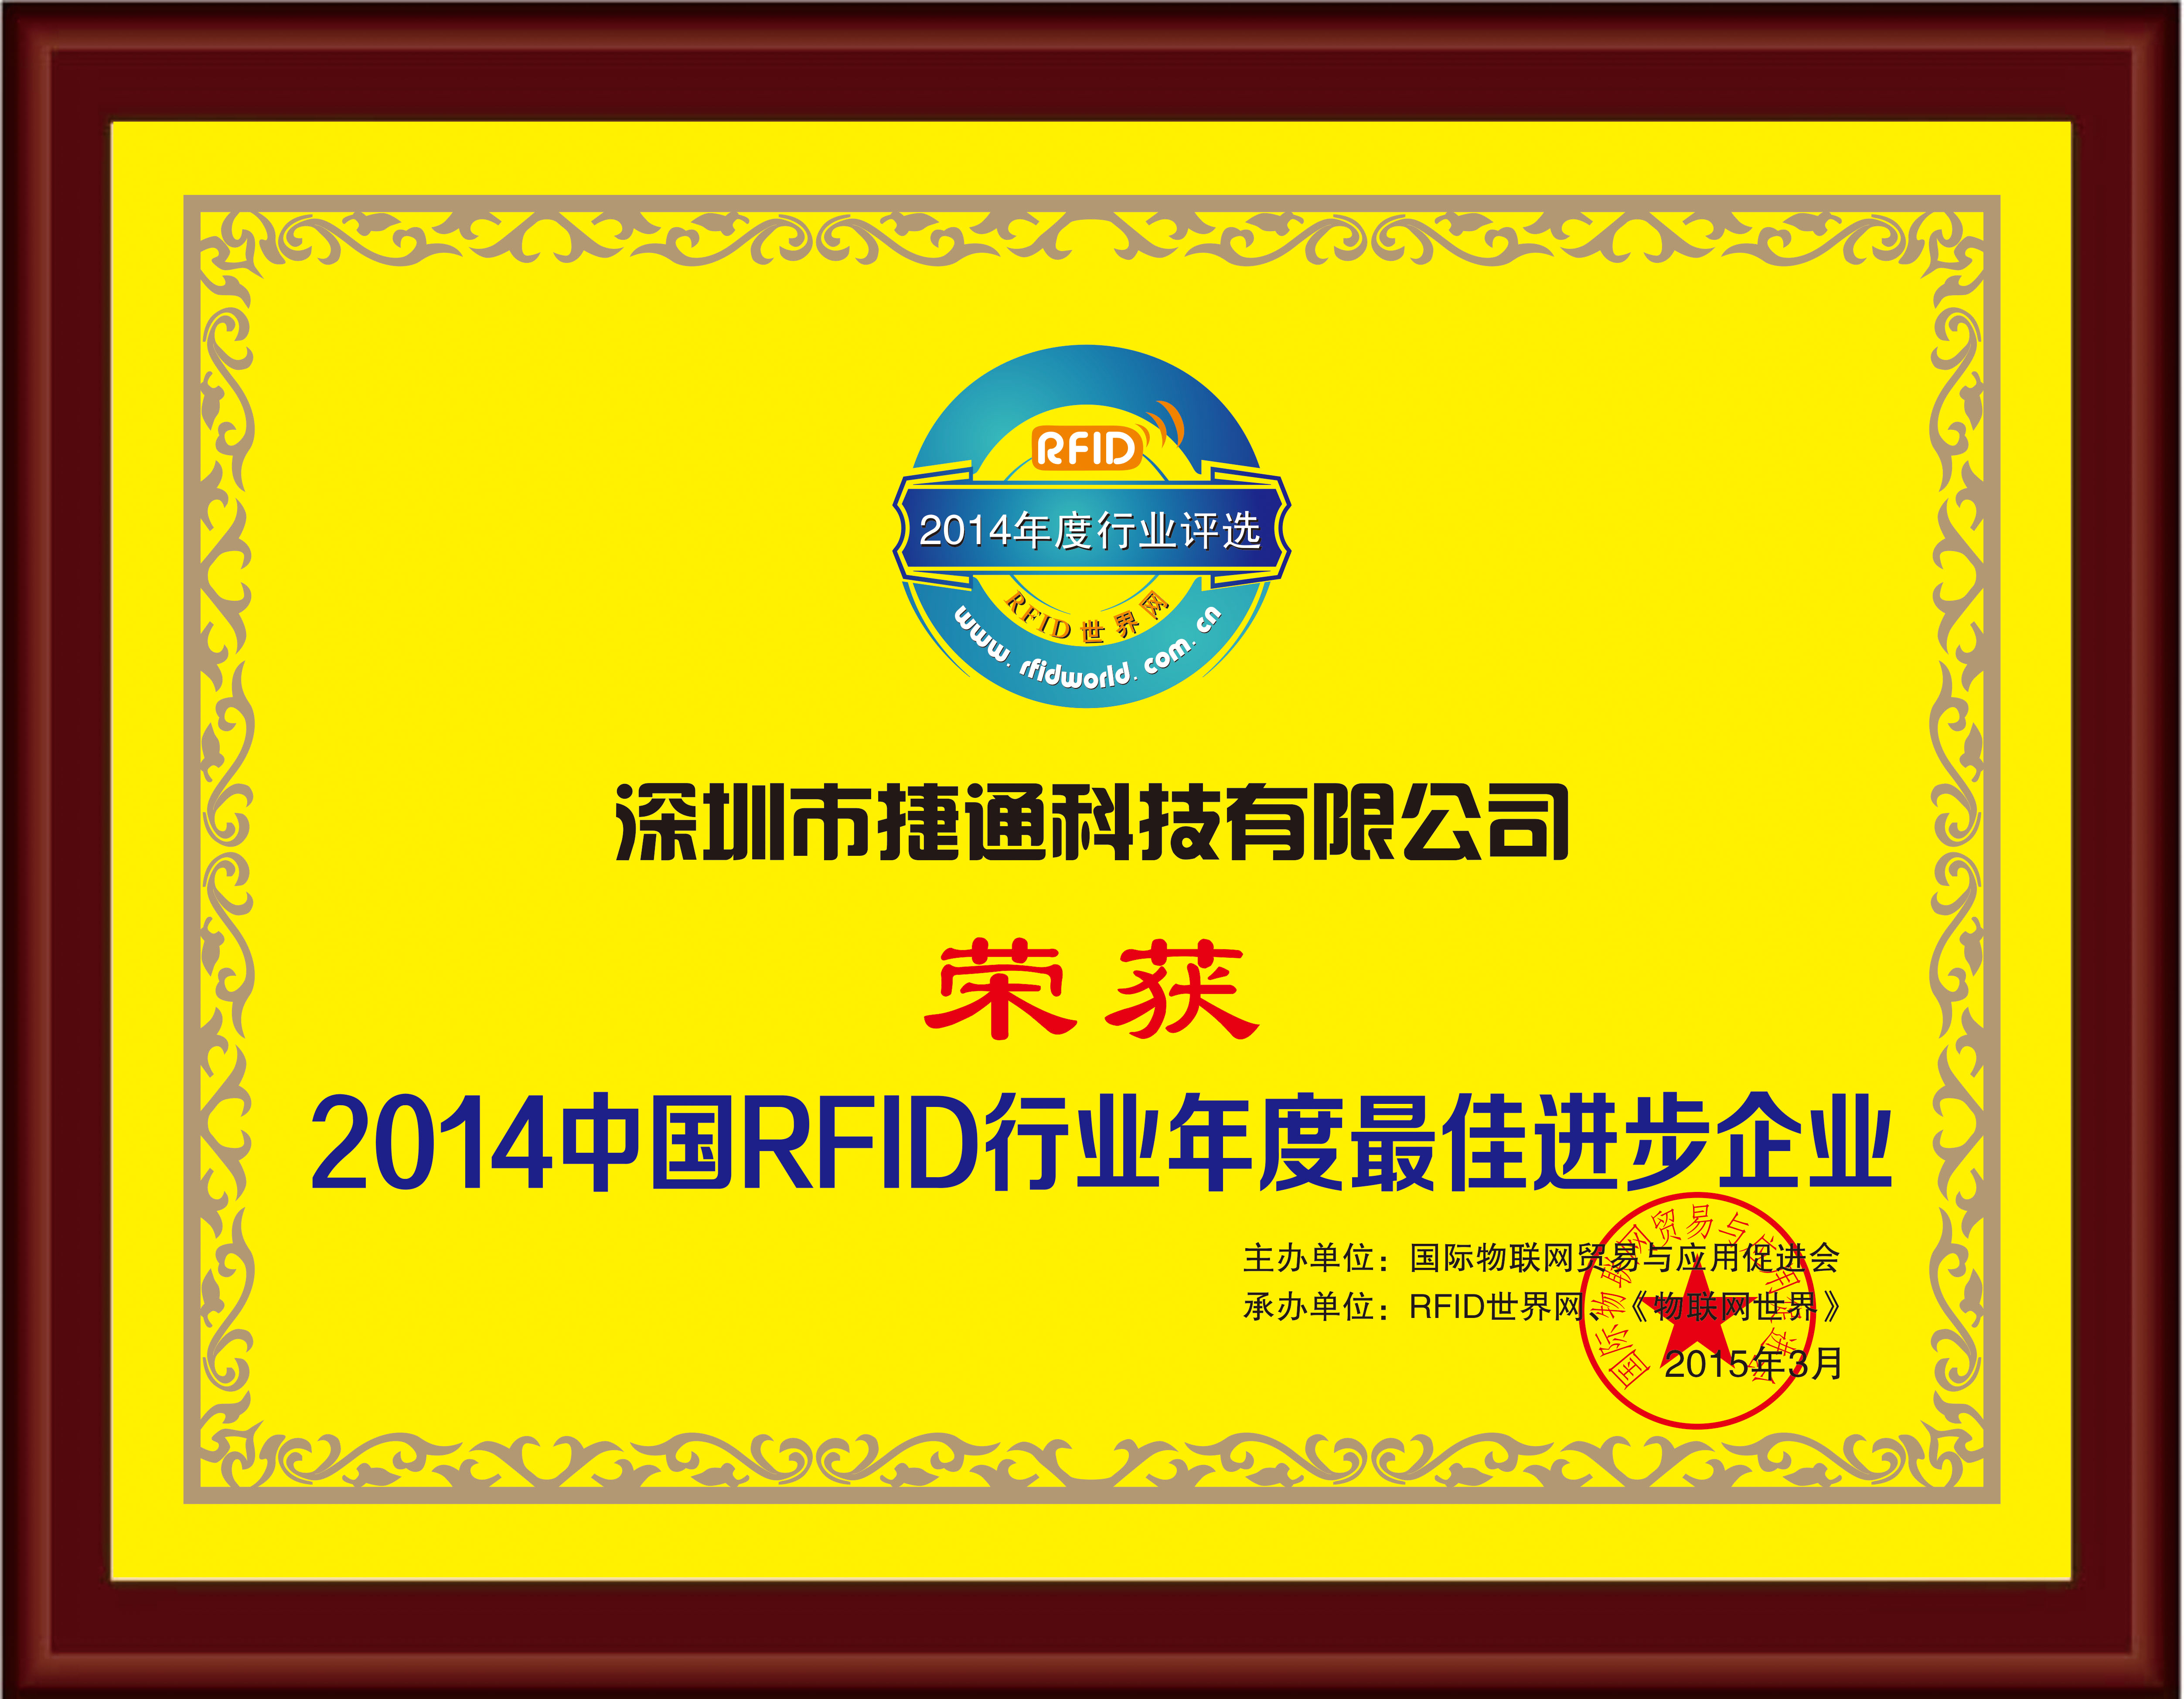 荣获2014中国RFID行业年度最佳进步企业奖